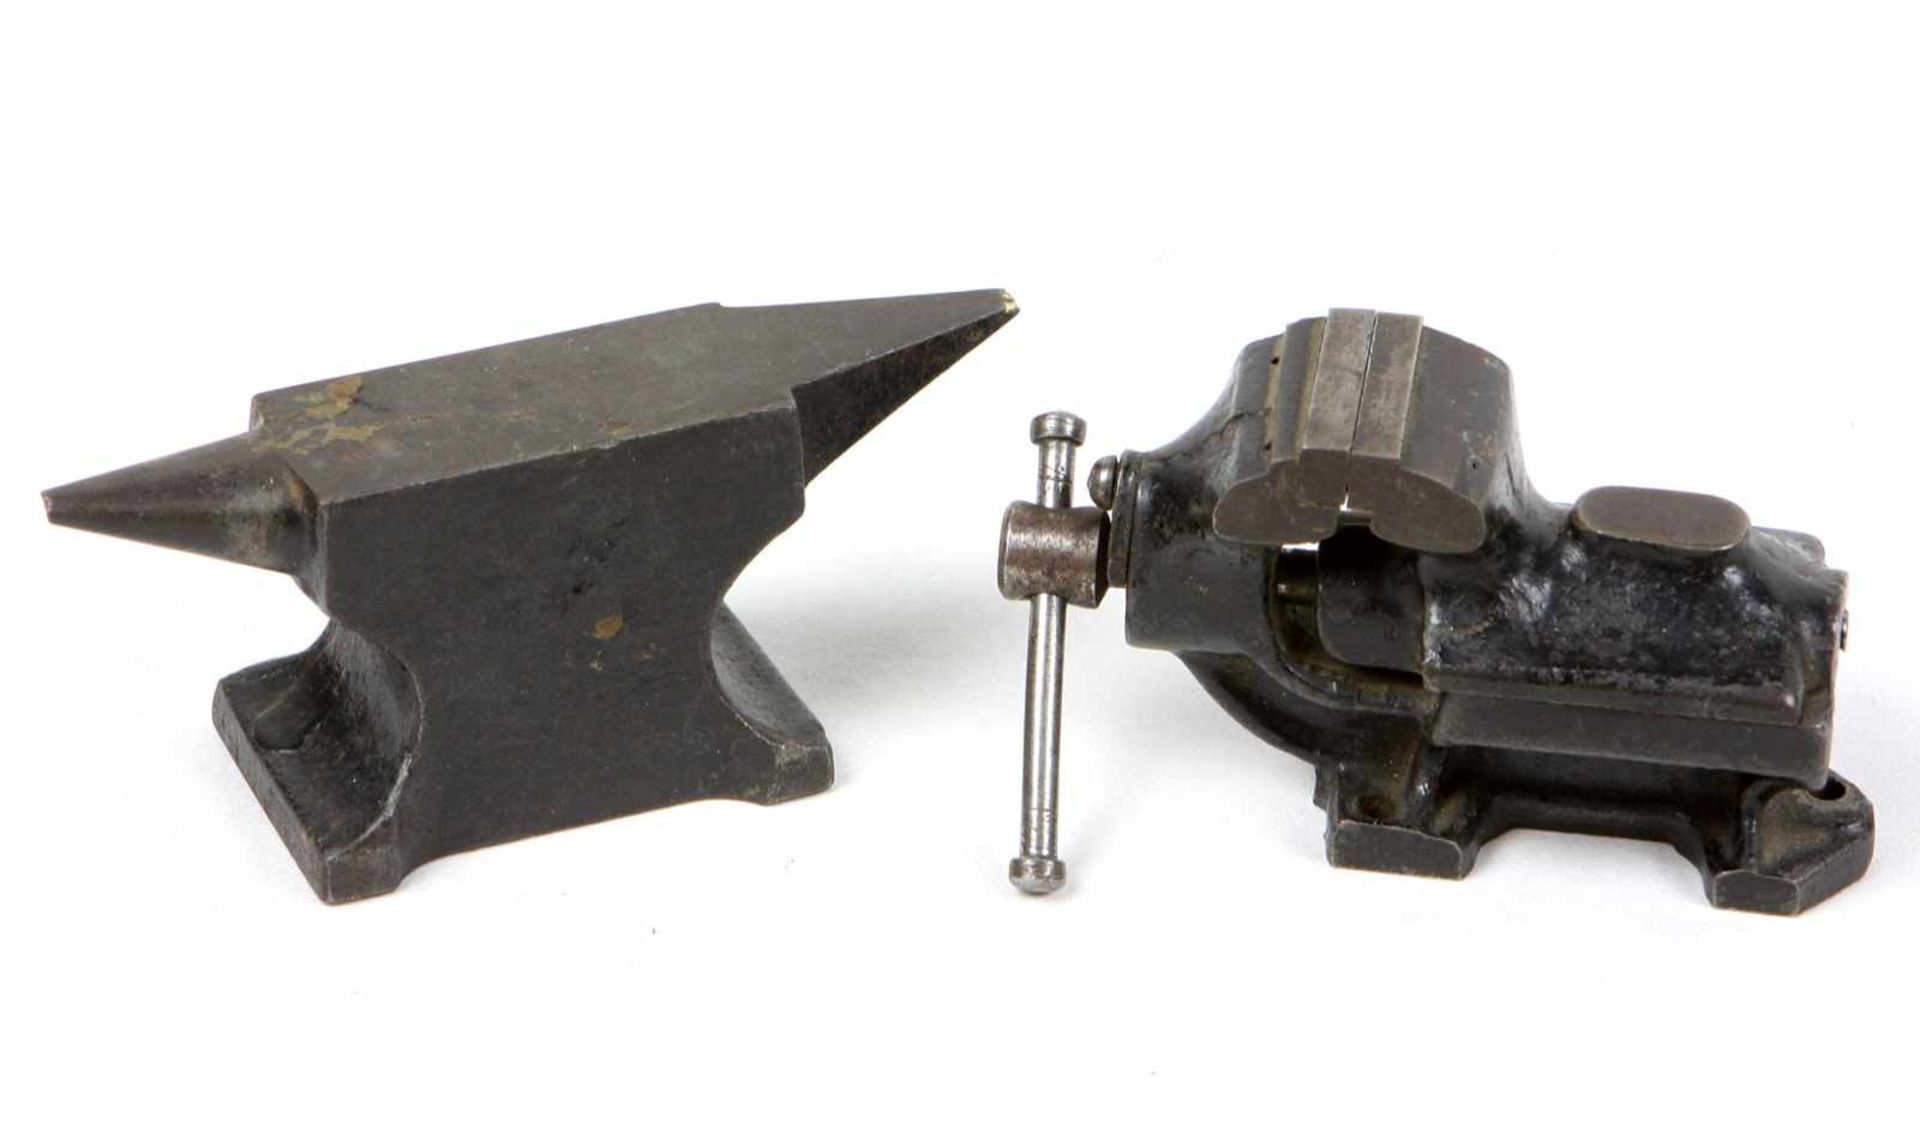 Uhrmacher WerkzeugEisen, dabei Miniatur Ambos u. Schraubstock, H ca. 5 cm, gut erhalten